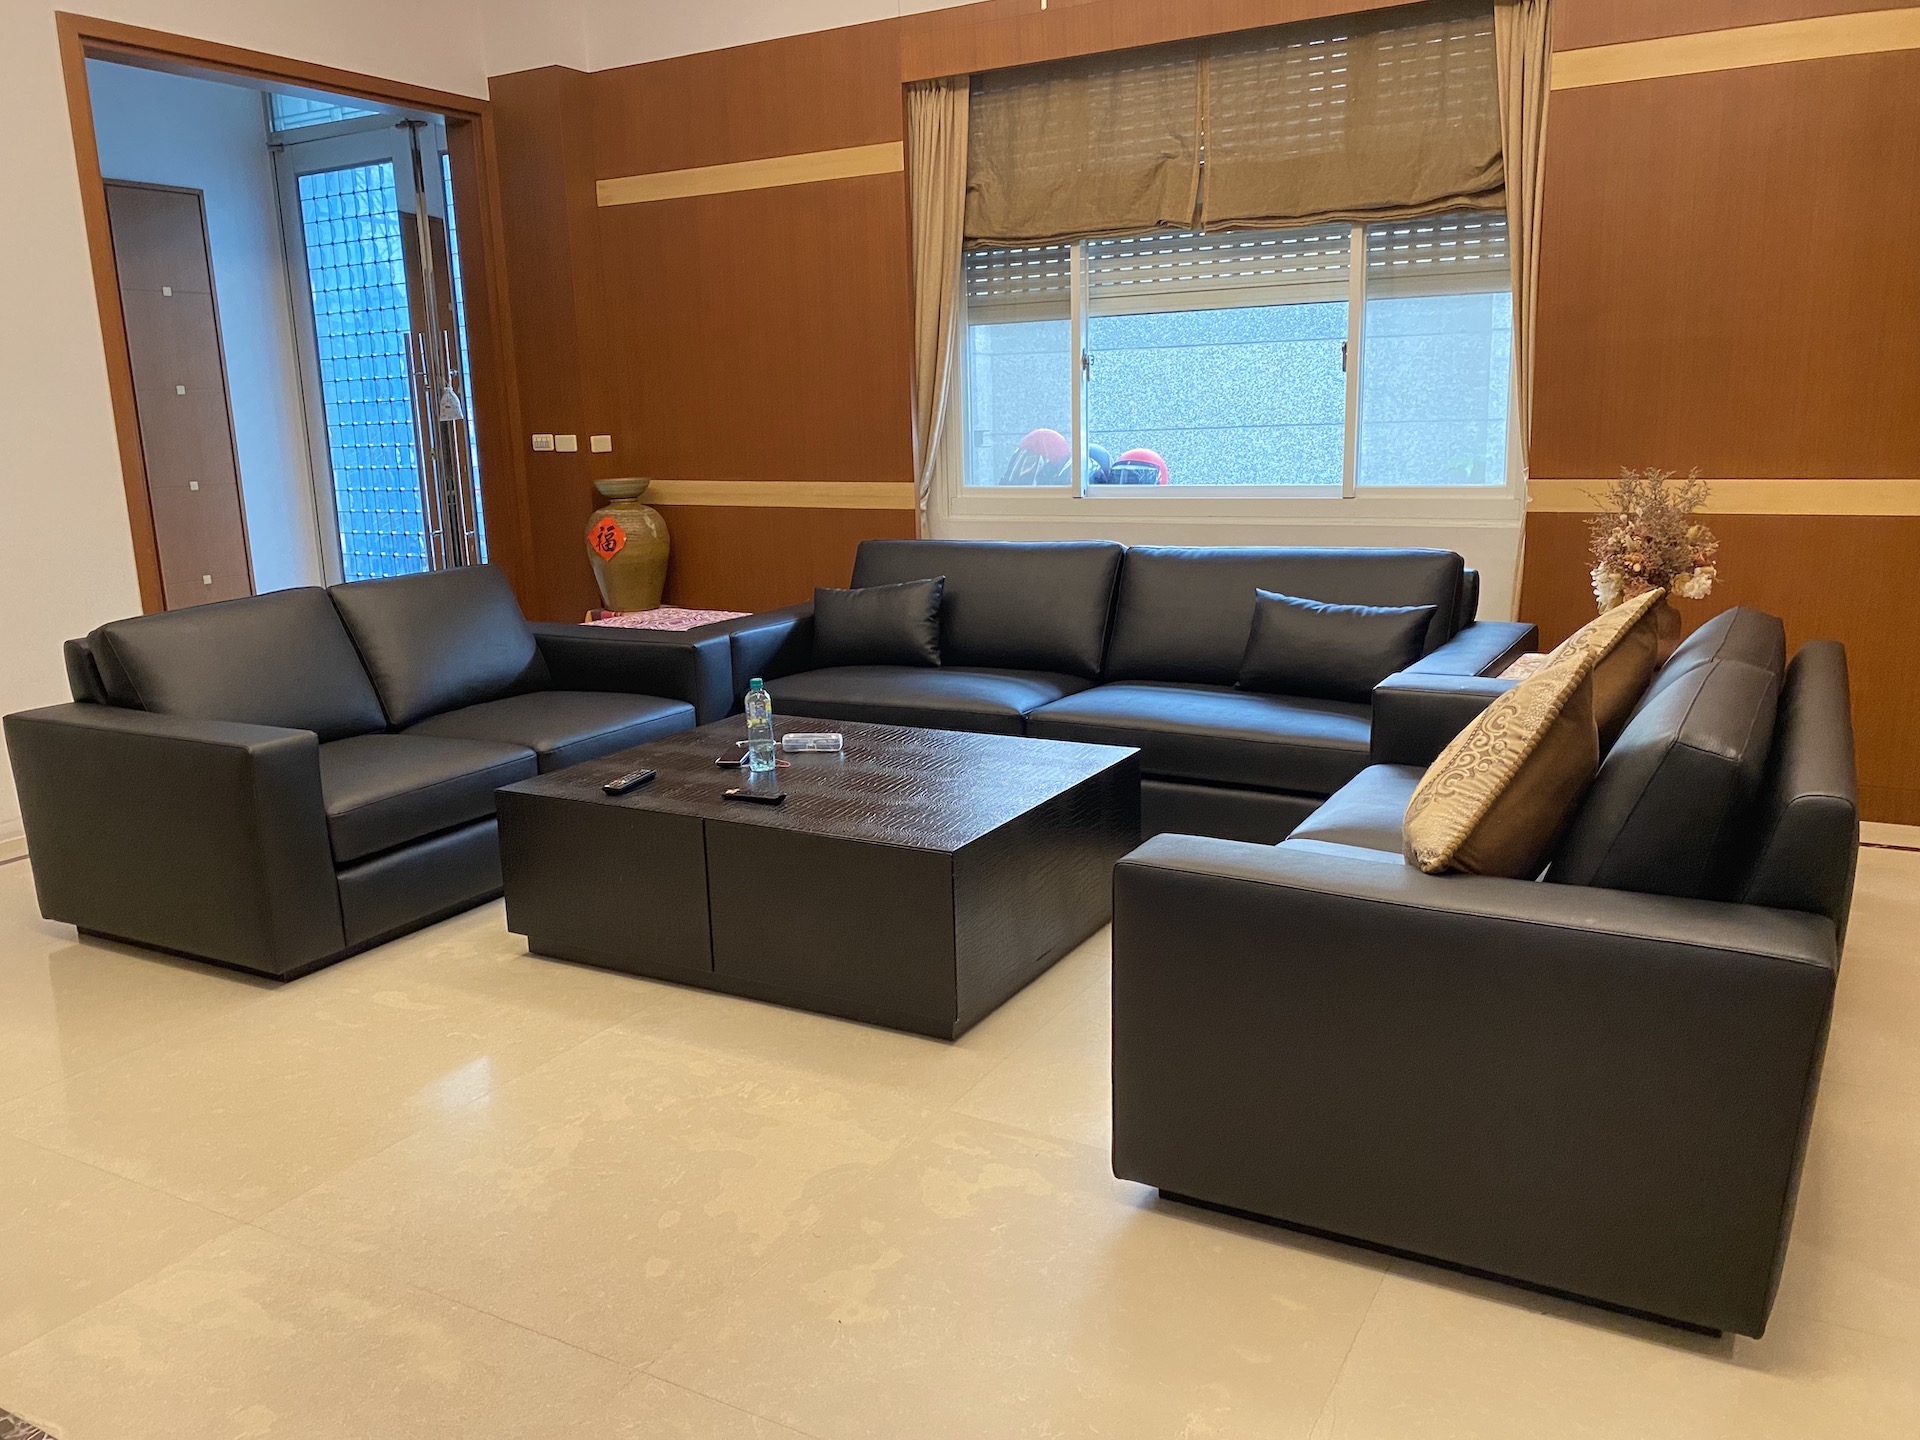 【客戶案例分享】台中東區2+2+3人座沙發翻修換皮